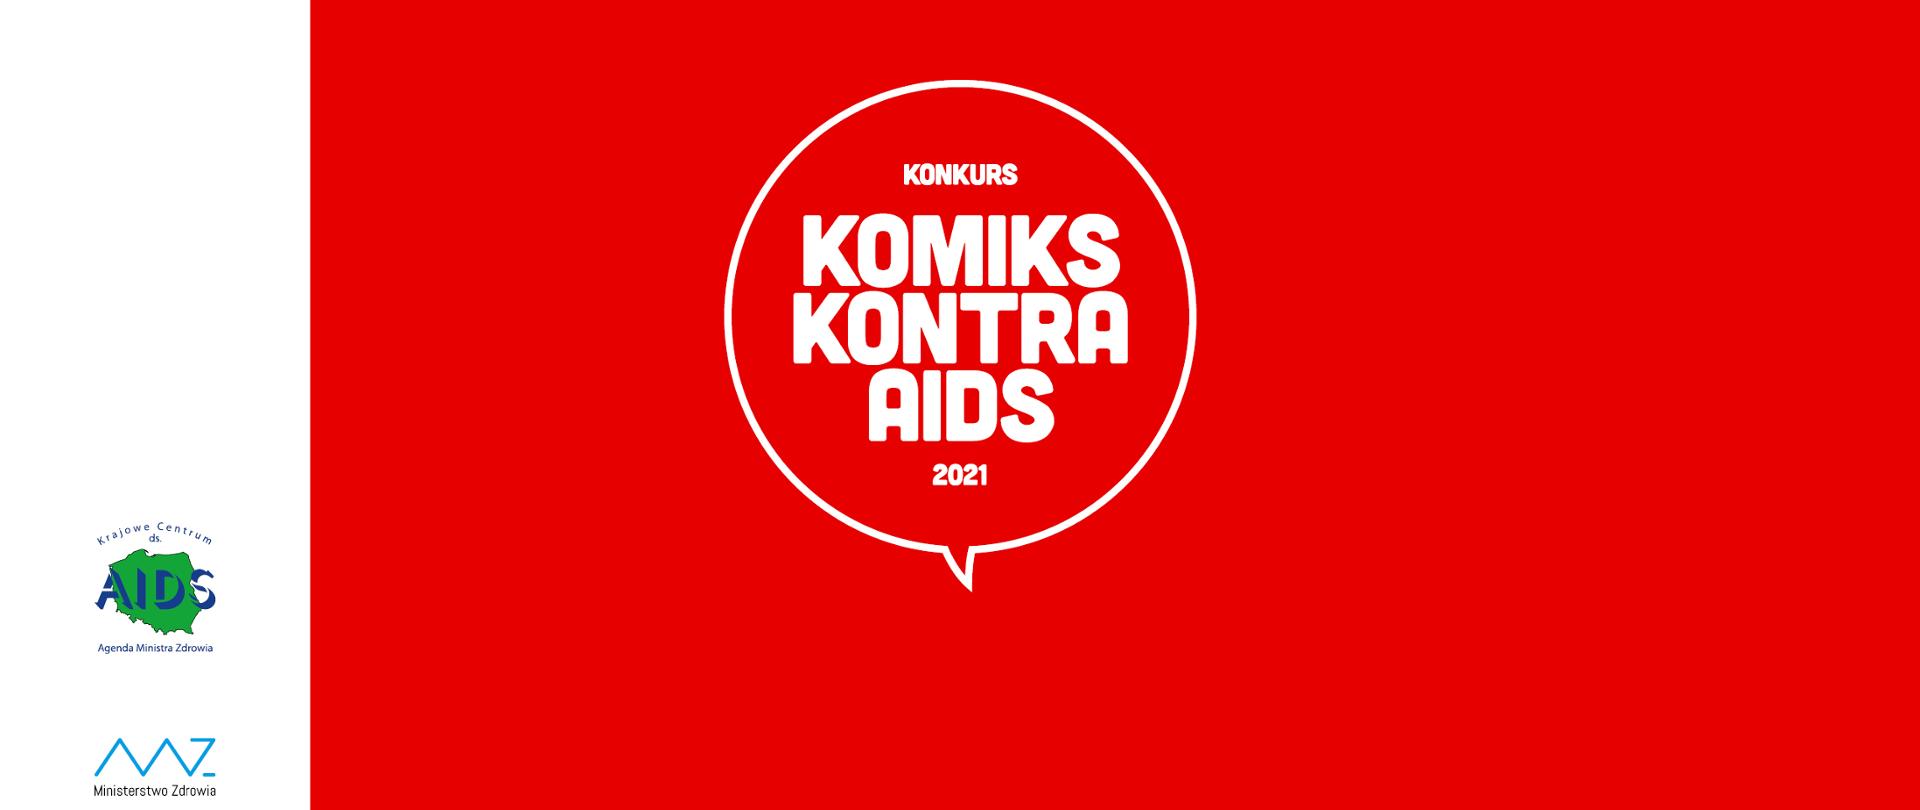 baner informujący o konkursie organizowanym przez KC ds. AIDS